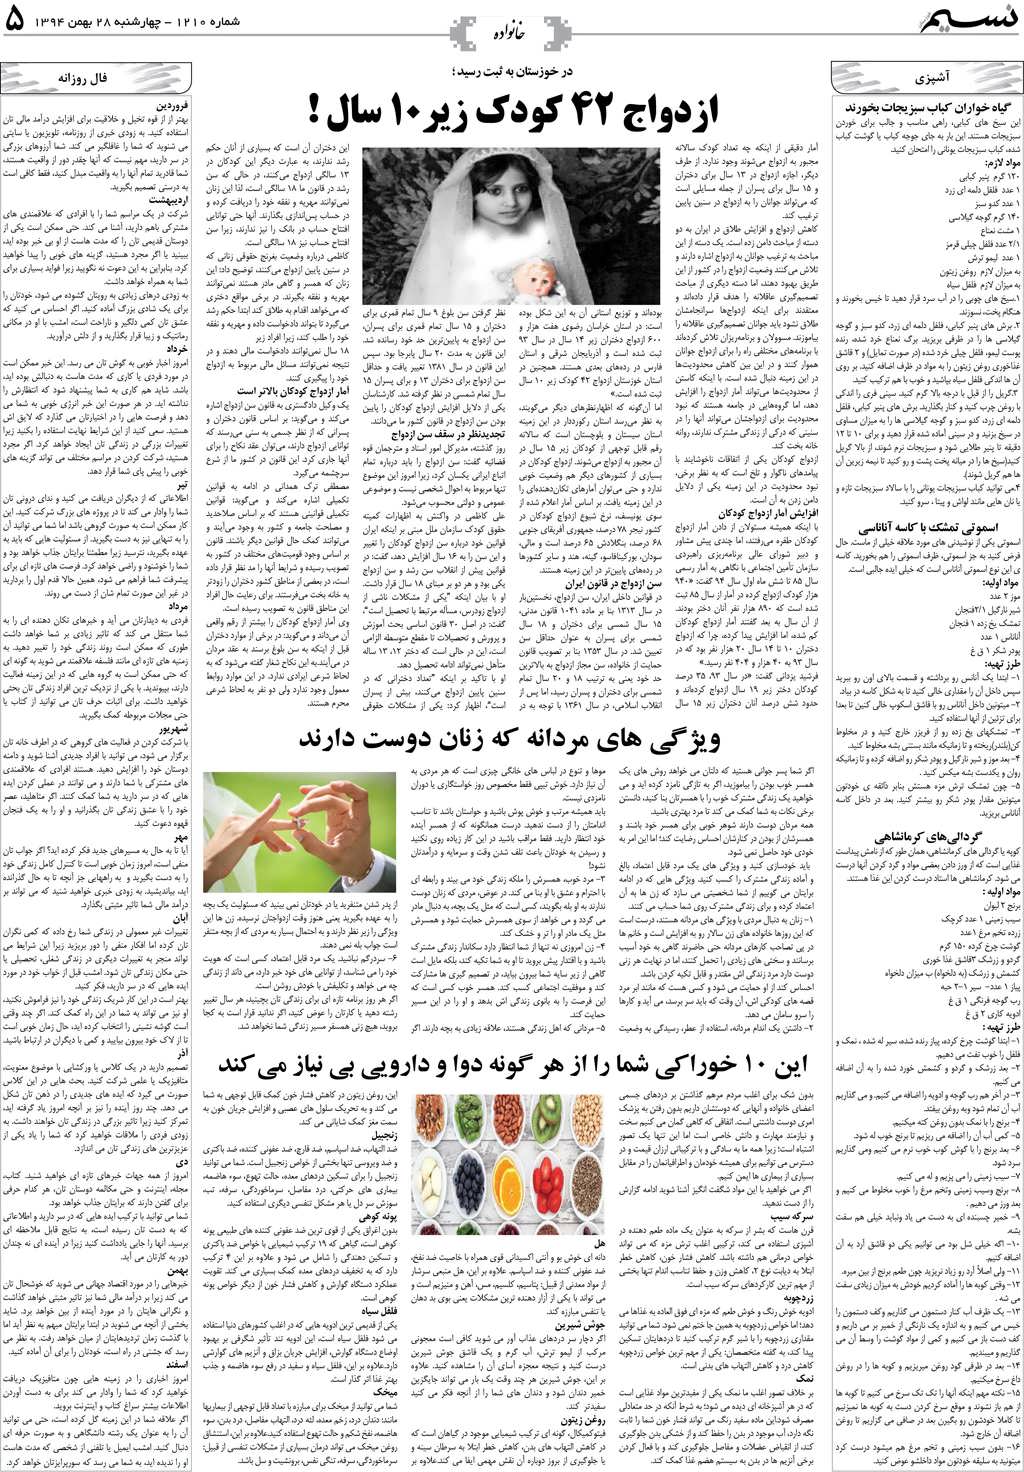 صفحه خانواده روزنامه نسیم شماره 1210